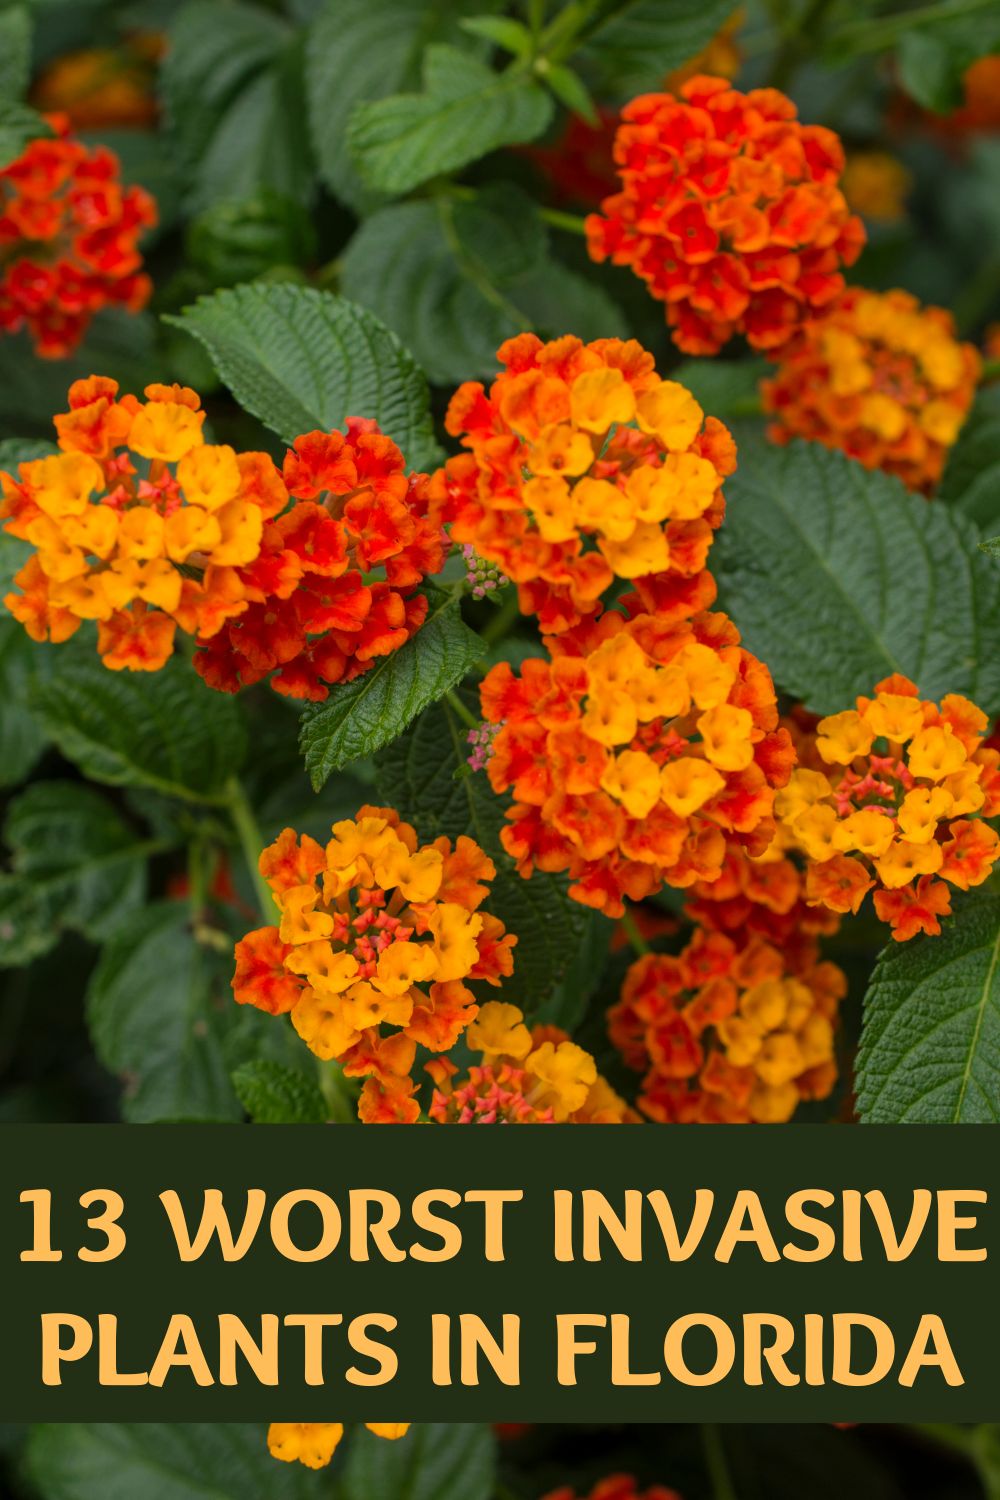 13 worst invasive plants in Florida